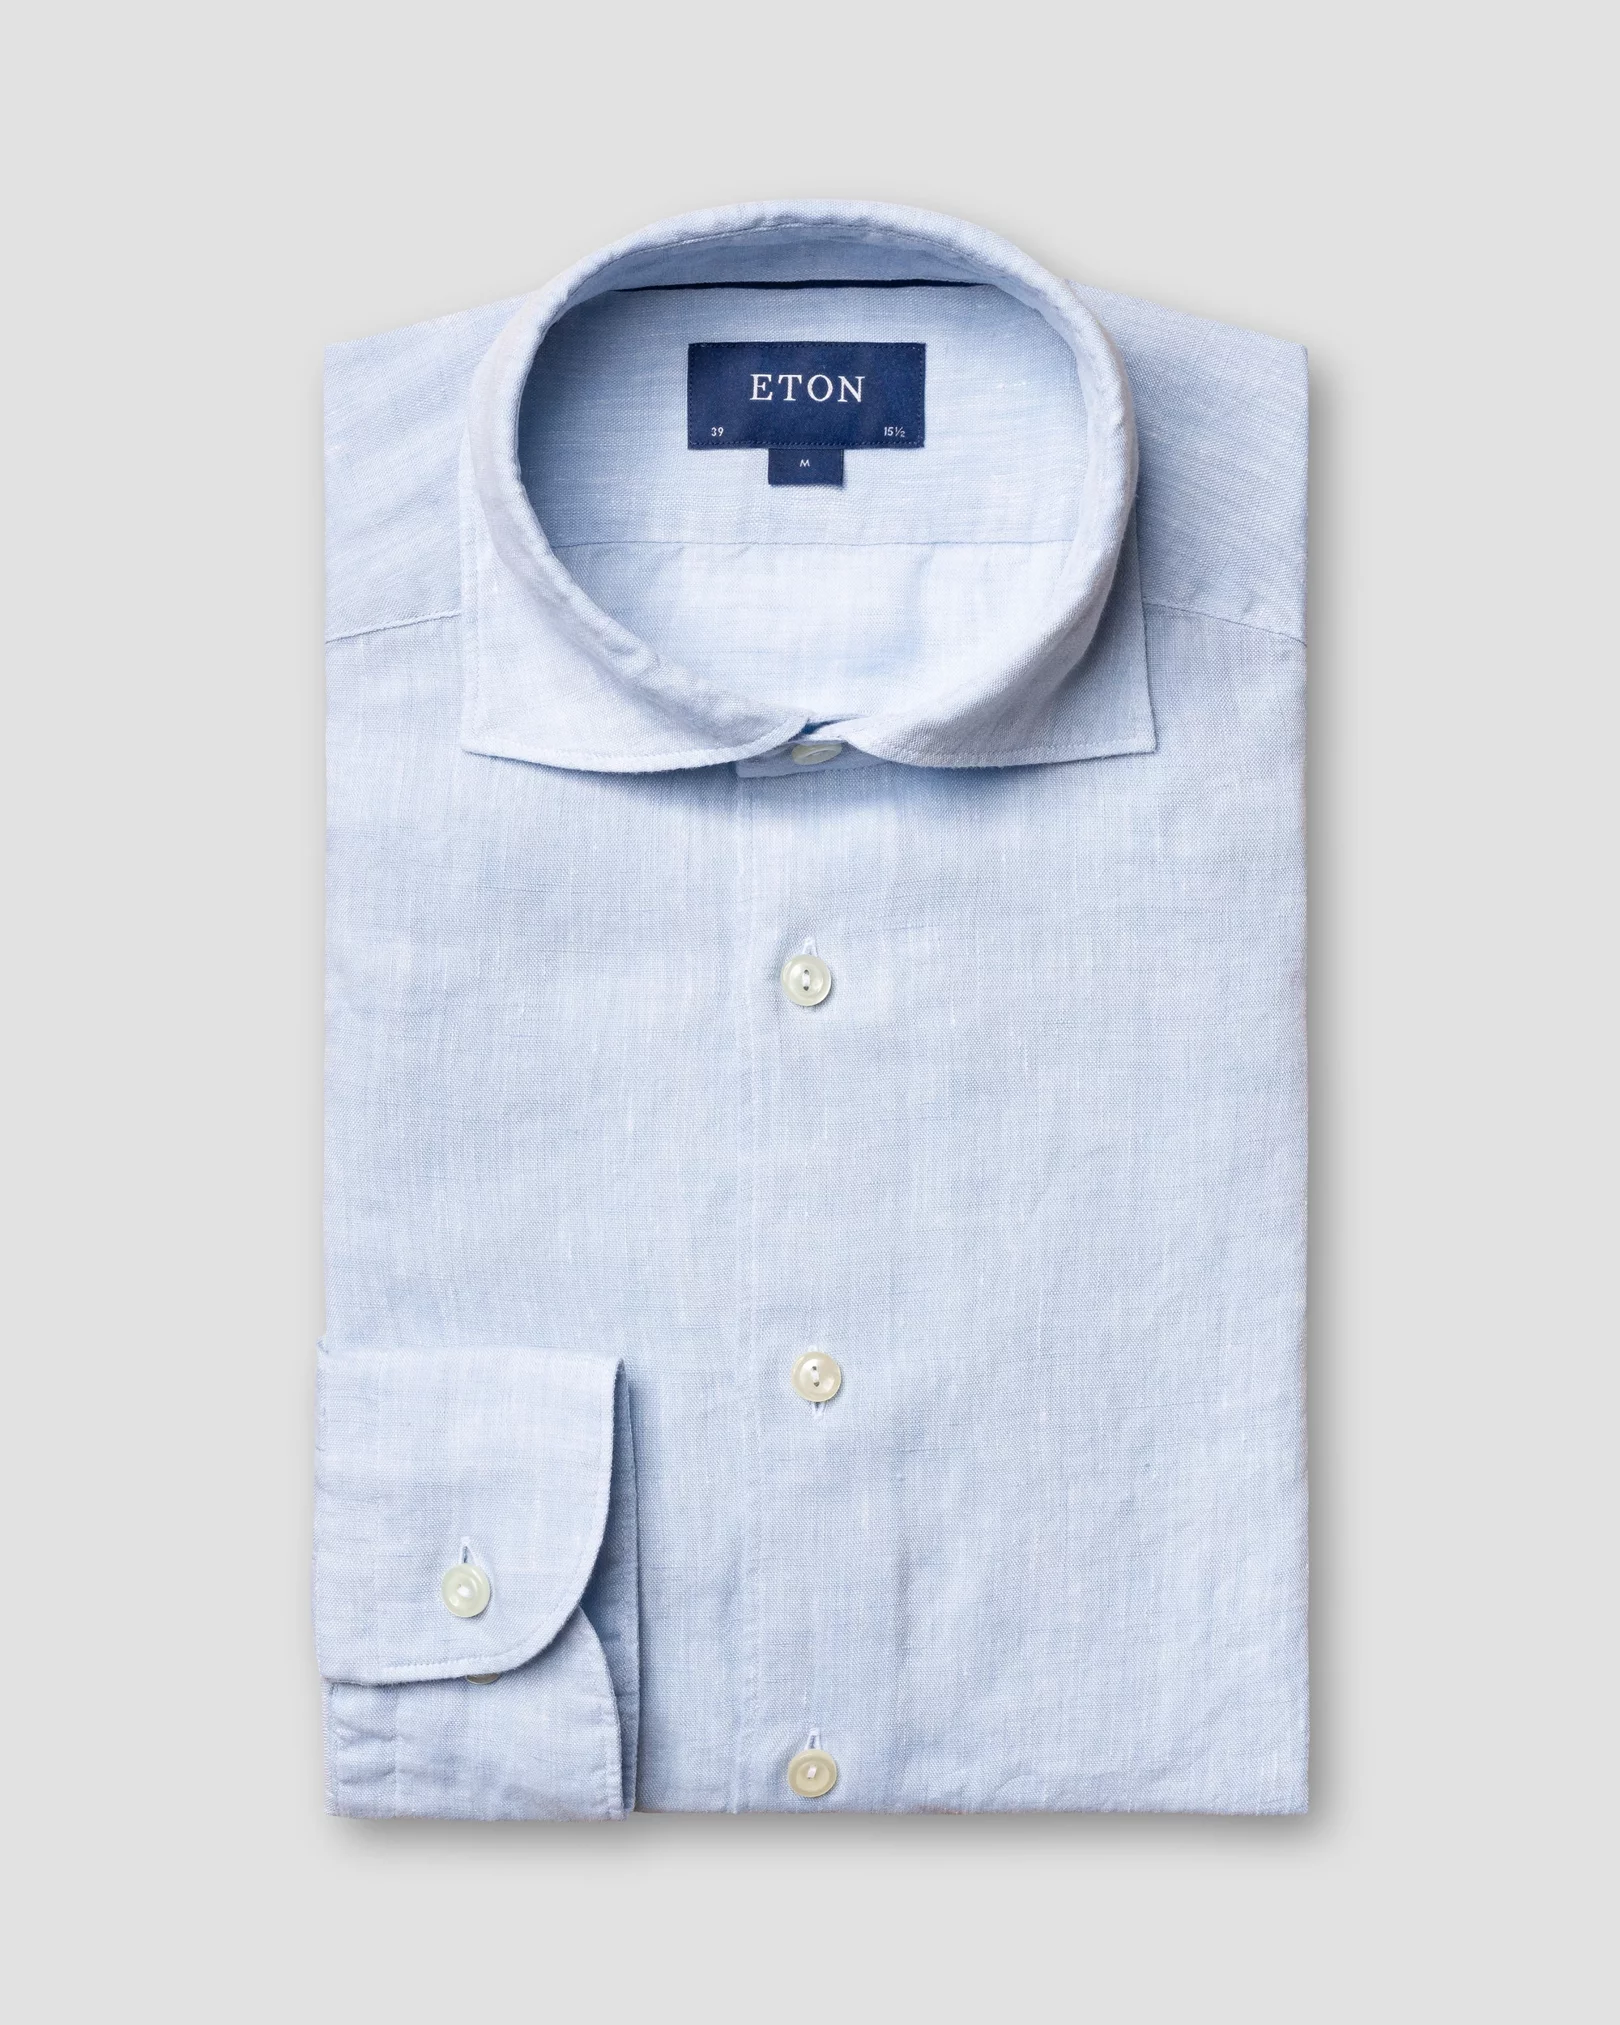 Eton - blue linen shirt wide spread collar